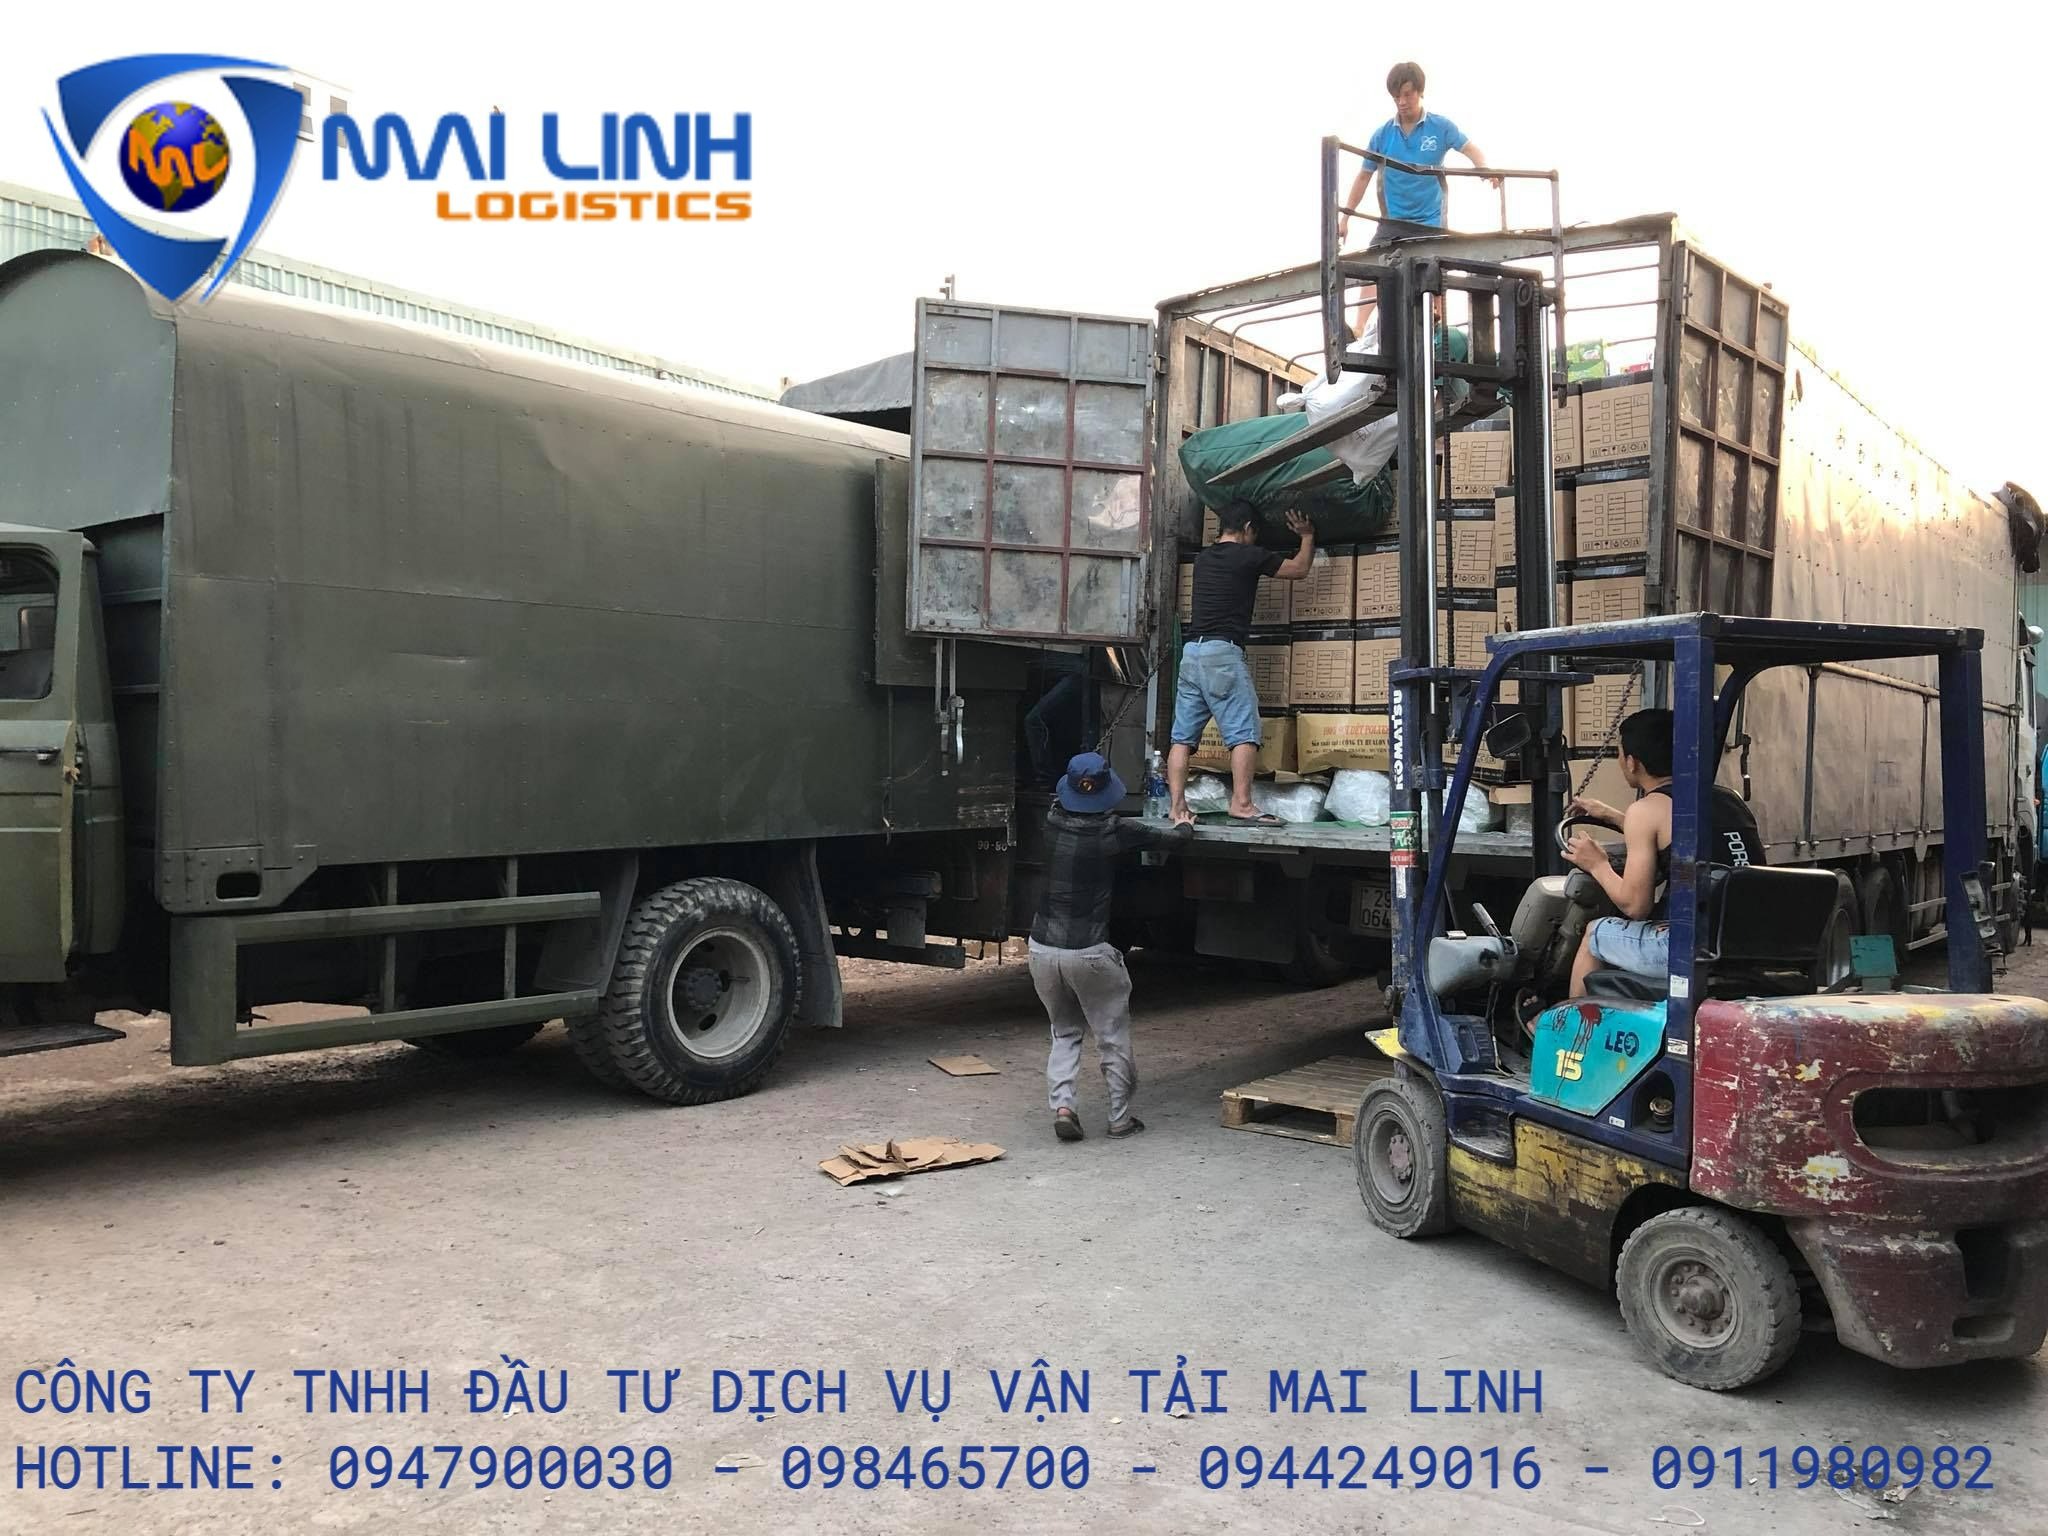 Vận tải Mai Linh - Đơn vị cung cấp dịch vụ bốc xếp hàng hóa tại TP. HCM